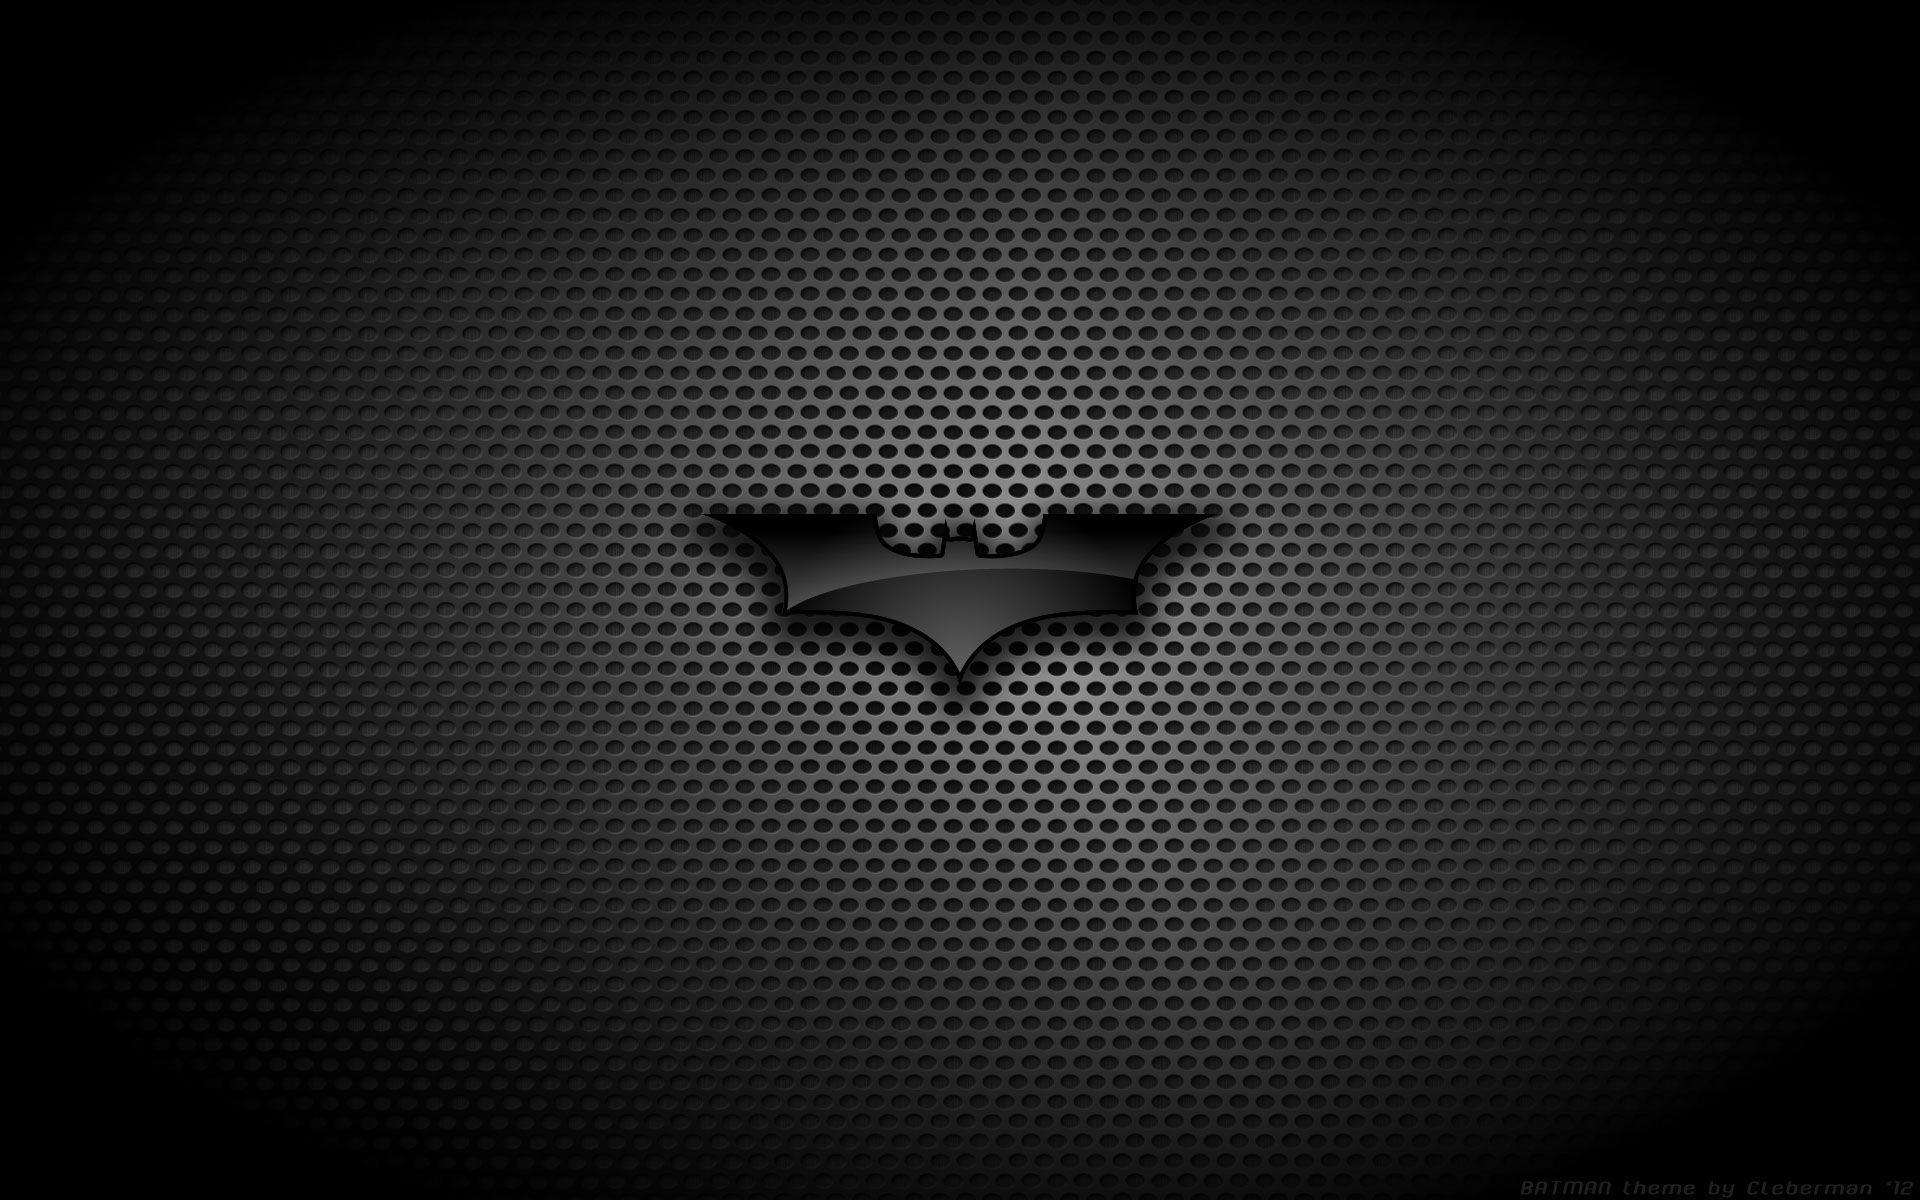 Batman Logo Wallpaper Wide dwc 1920x1200 px 316.10 KB MovieAtman